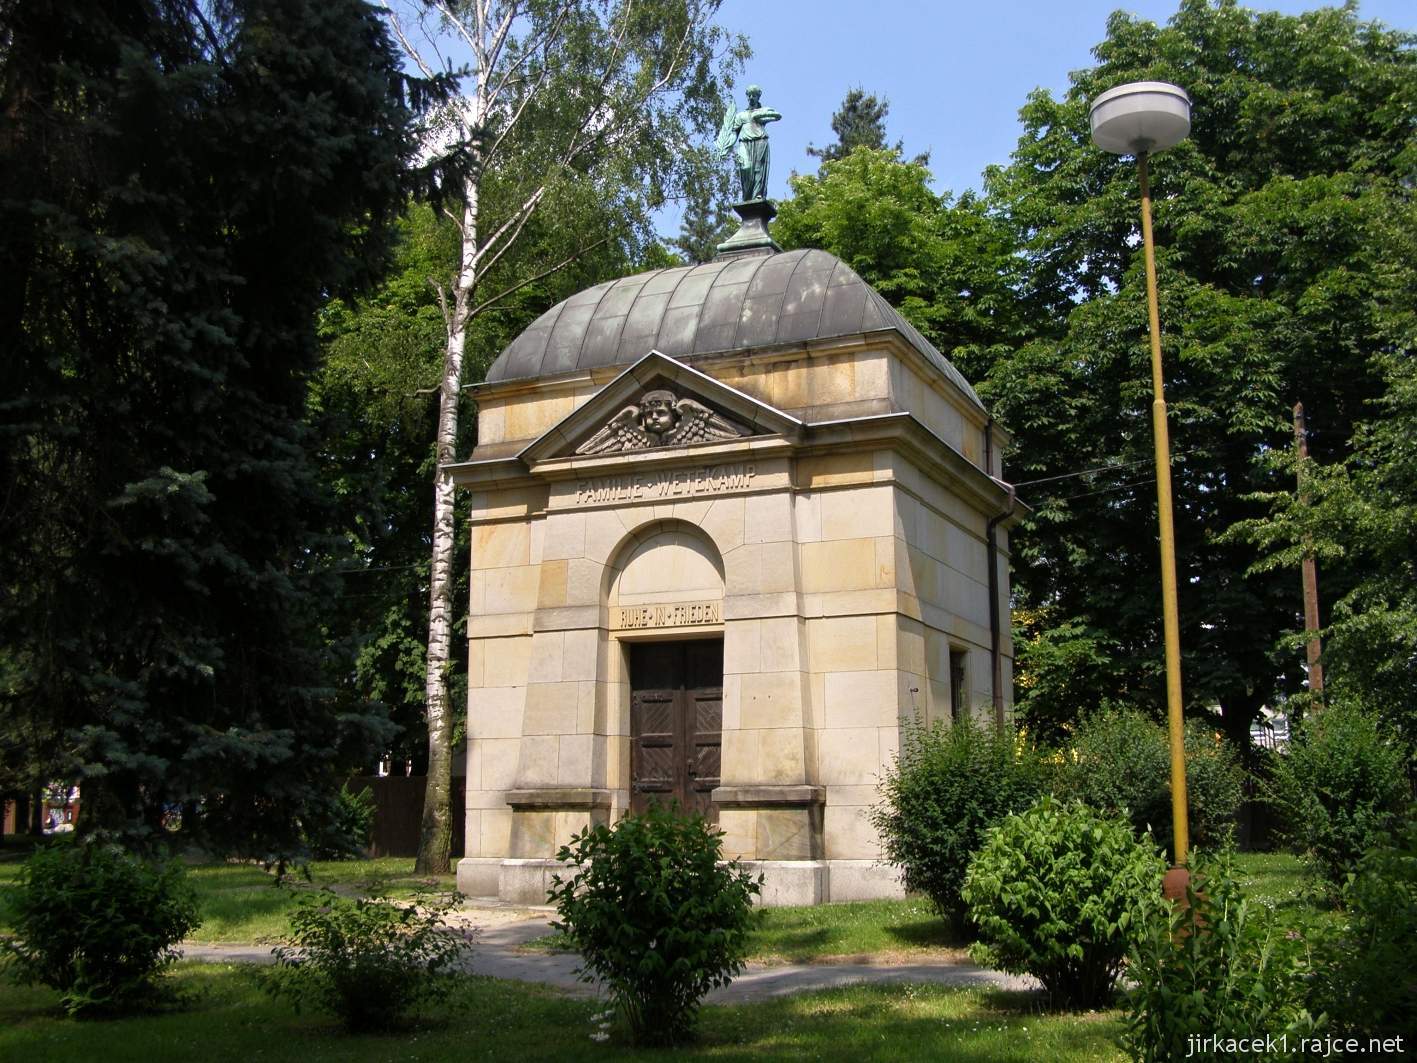 09 - Hlučín - Evangelický kostel 09 - hrobka rodiny Wetekampovy u kostela